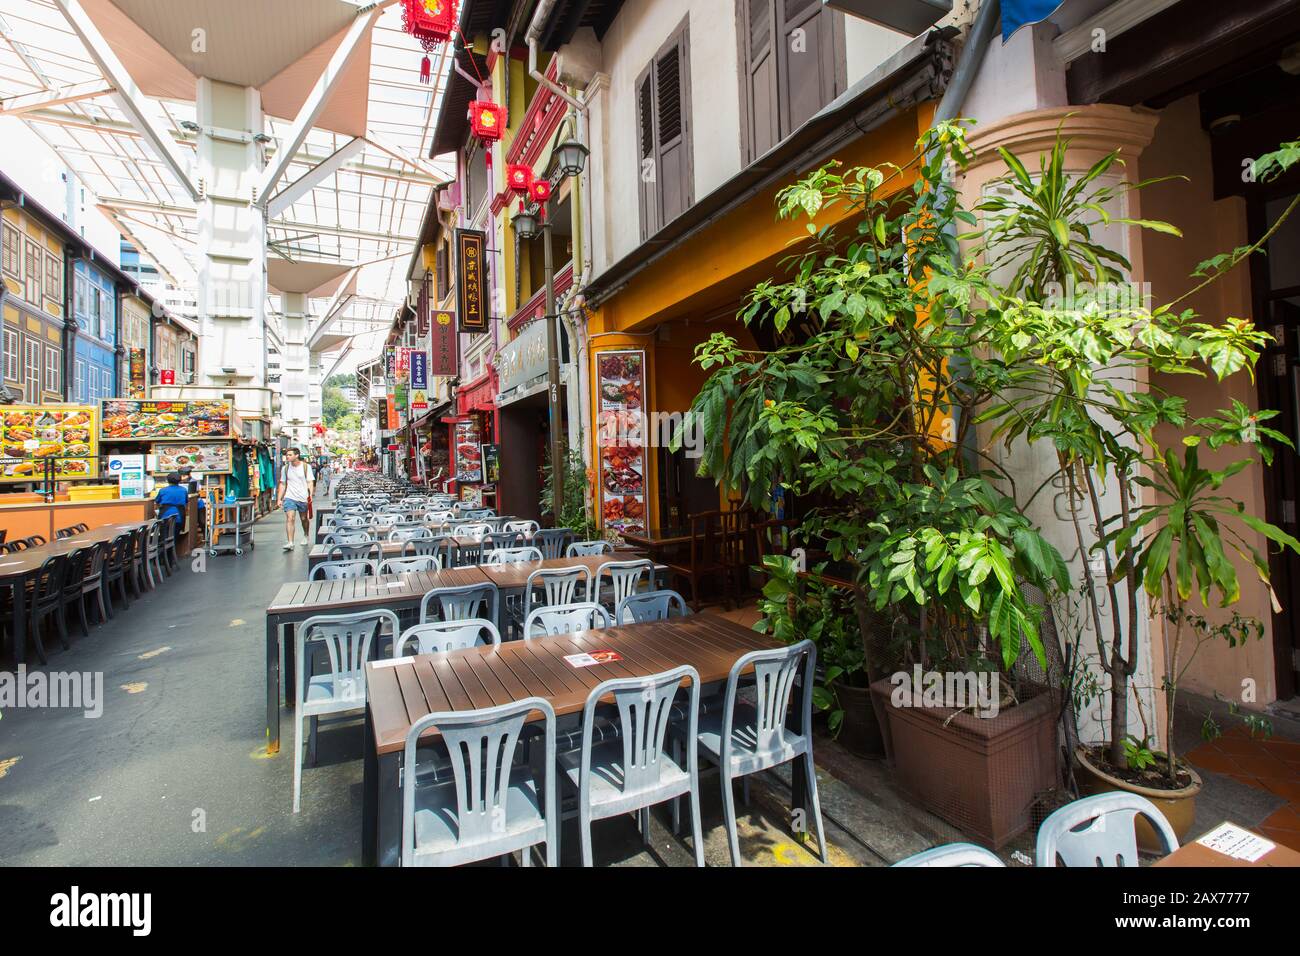 Chinatown Food Street ist ein beliebtes Dining-Erlebnis im Street-Stil, es gibt viele chinesische Restaurants entlang der Shophouses. Singapur. Stockfoto